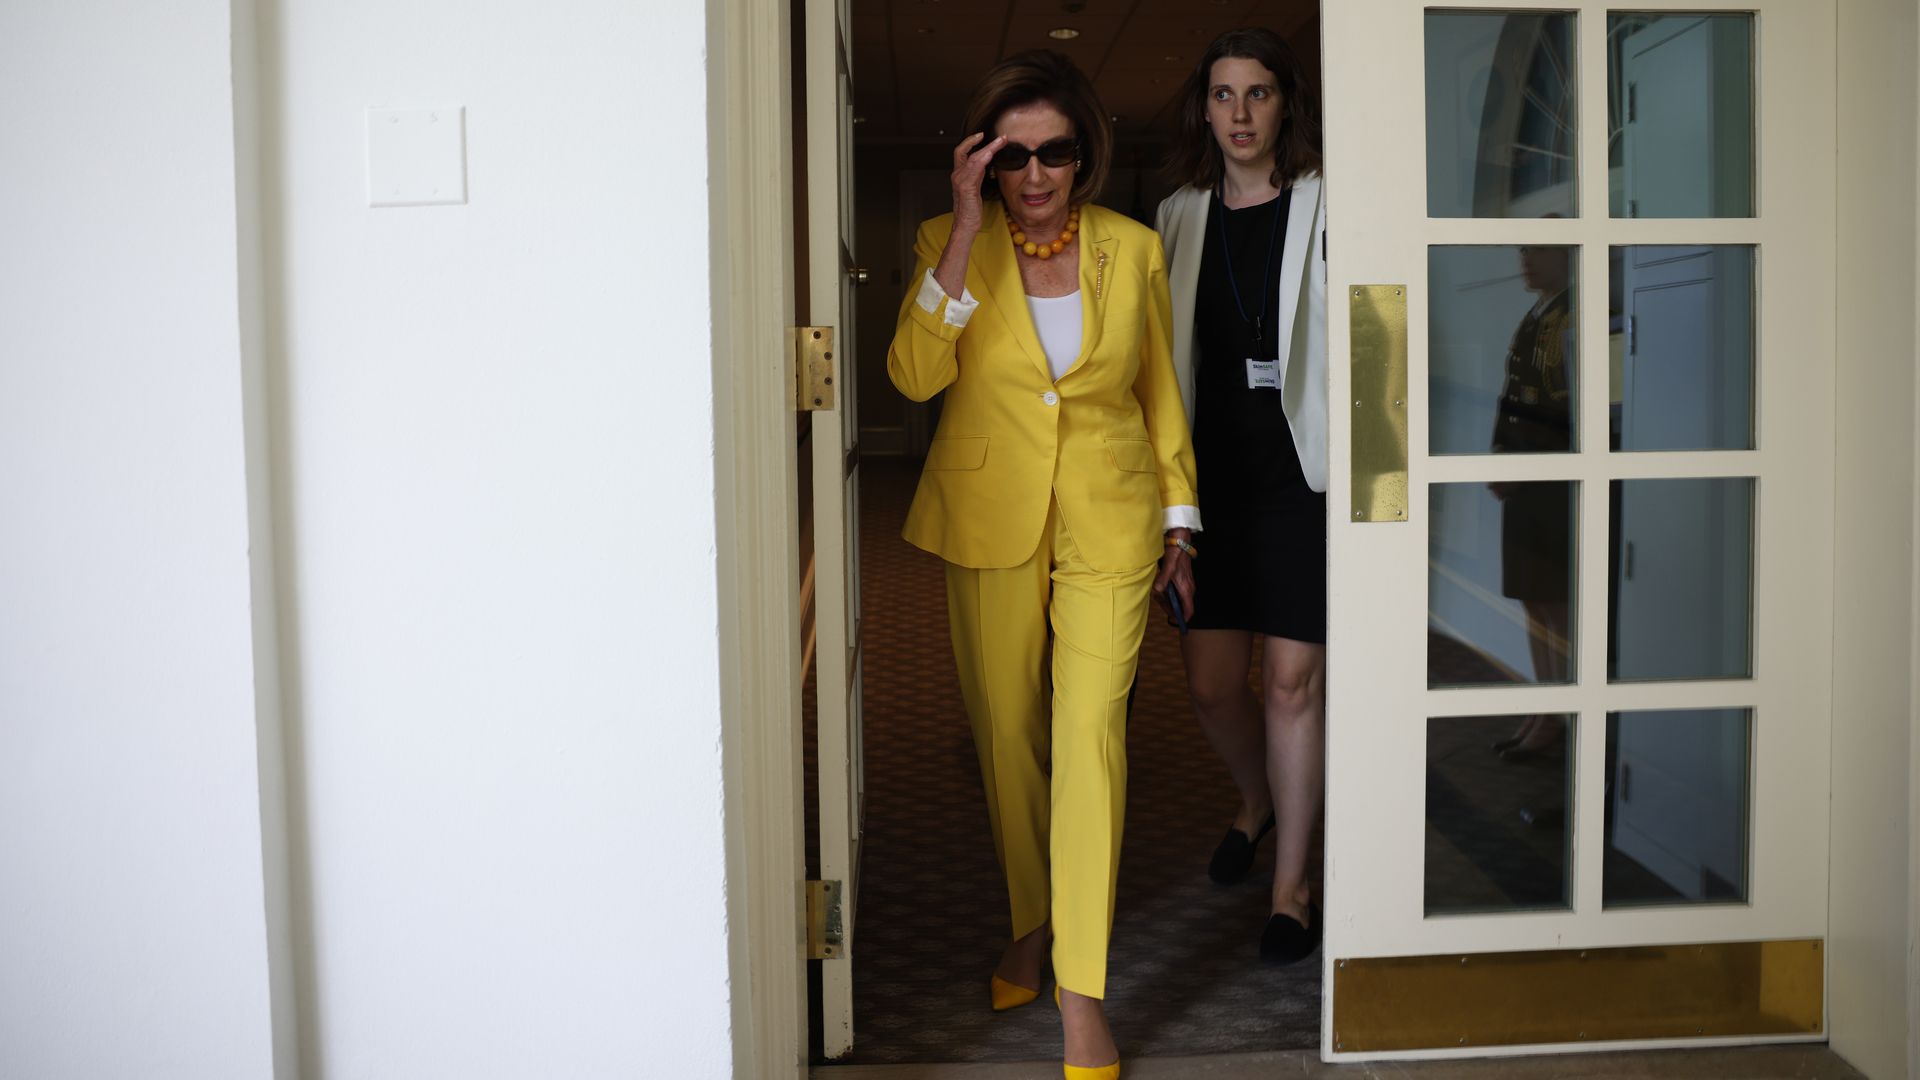 House Speaker Nancy Pelosi is seen entering the Rose Garden for an event.